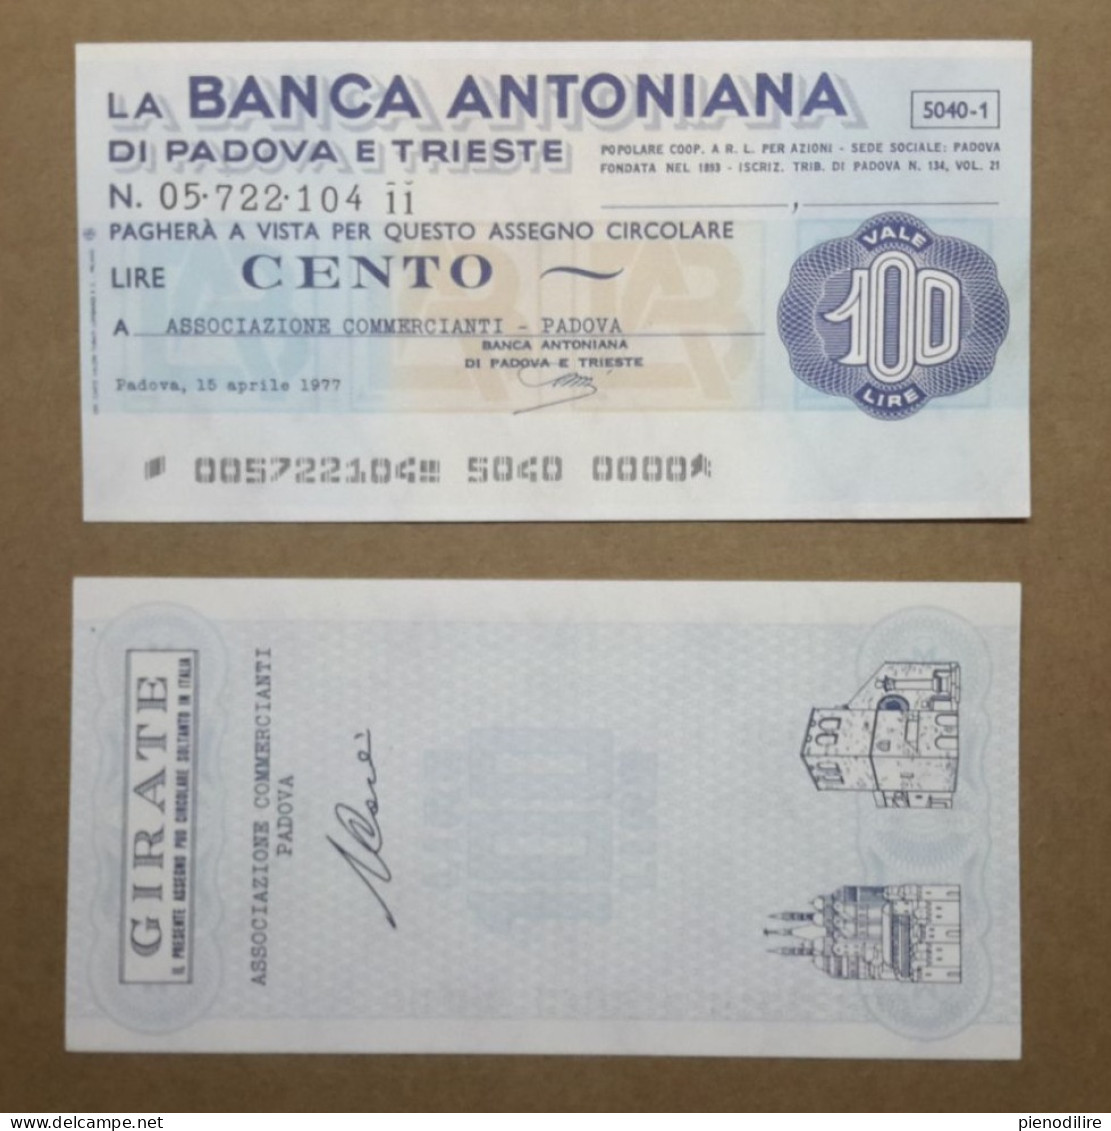 BANCA ANTONIANA DI PADOVA E TRIESTE, 100 Lire 15.04.1977 ASSOCIAZIONE COMMERCIANTI PADOVA (A1.68) - [10] Chèques